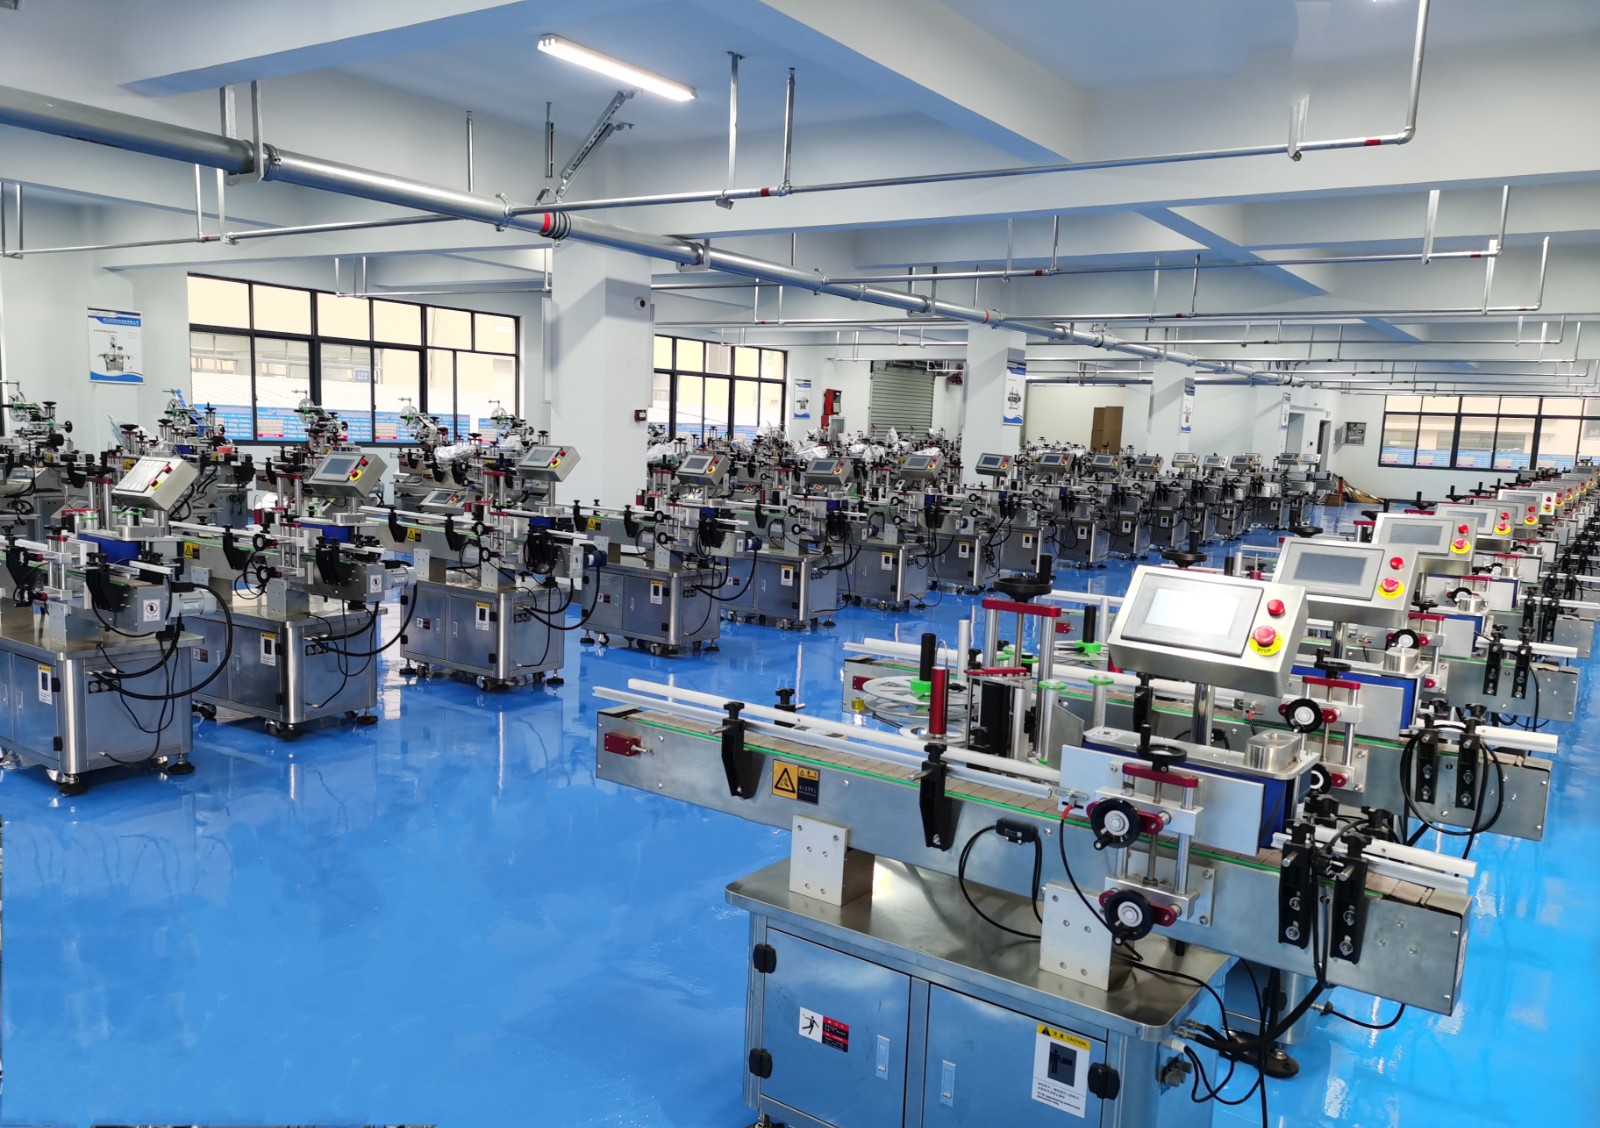 COTV直播-浙江皮克机械设备有限公司开发生产销售全自动贴标机系列设备产品